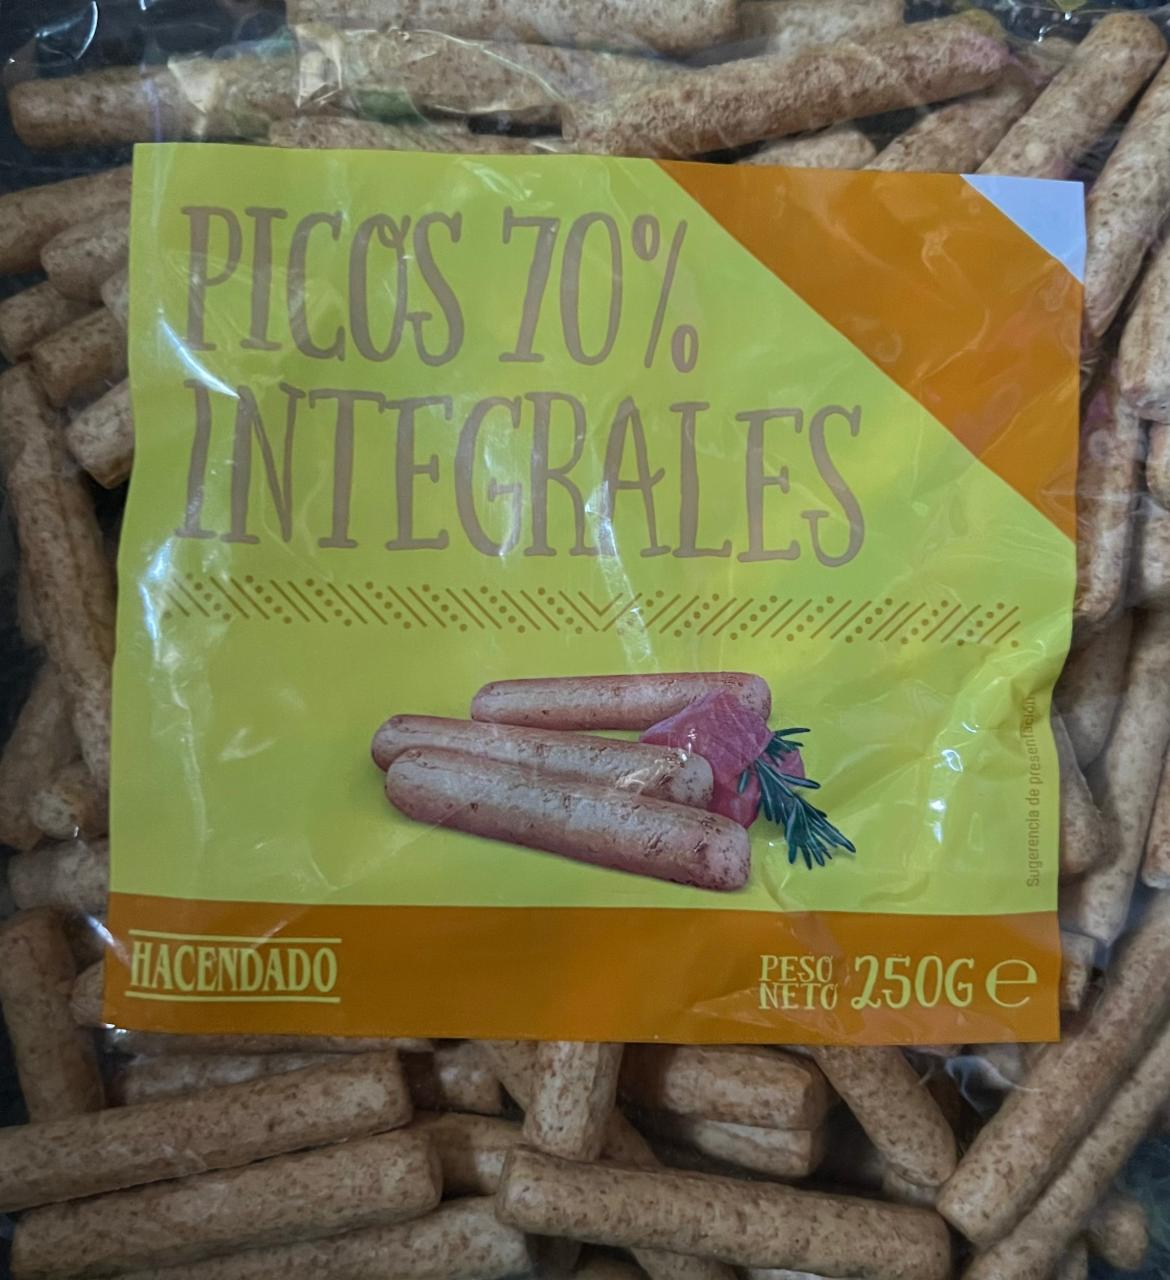 Fotografie - Picos 70% integrales Hacendado